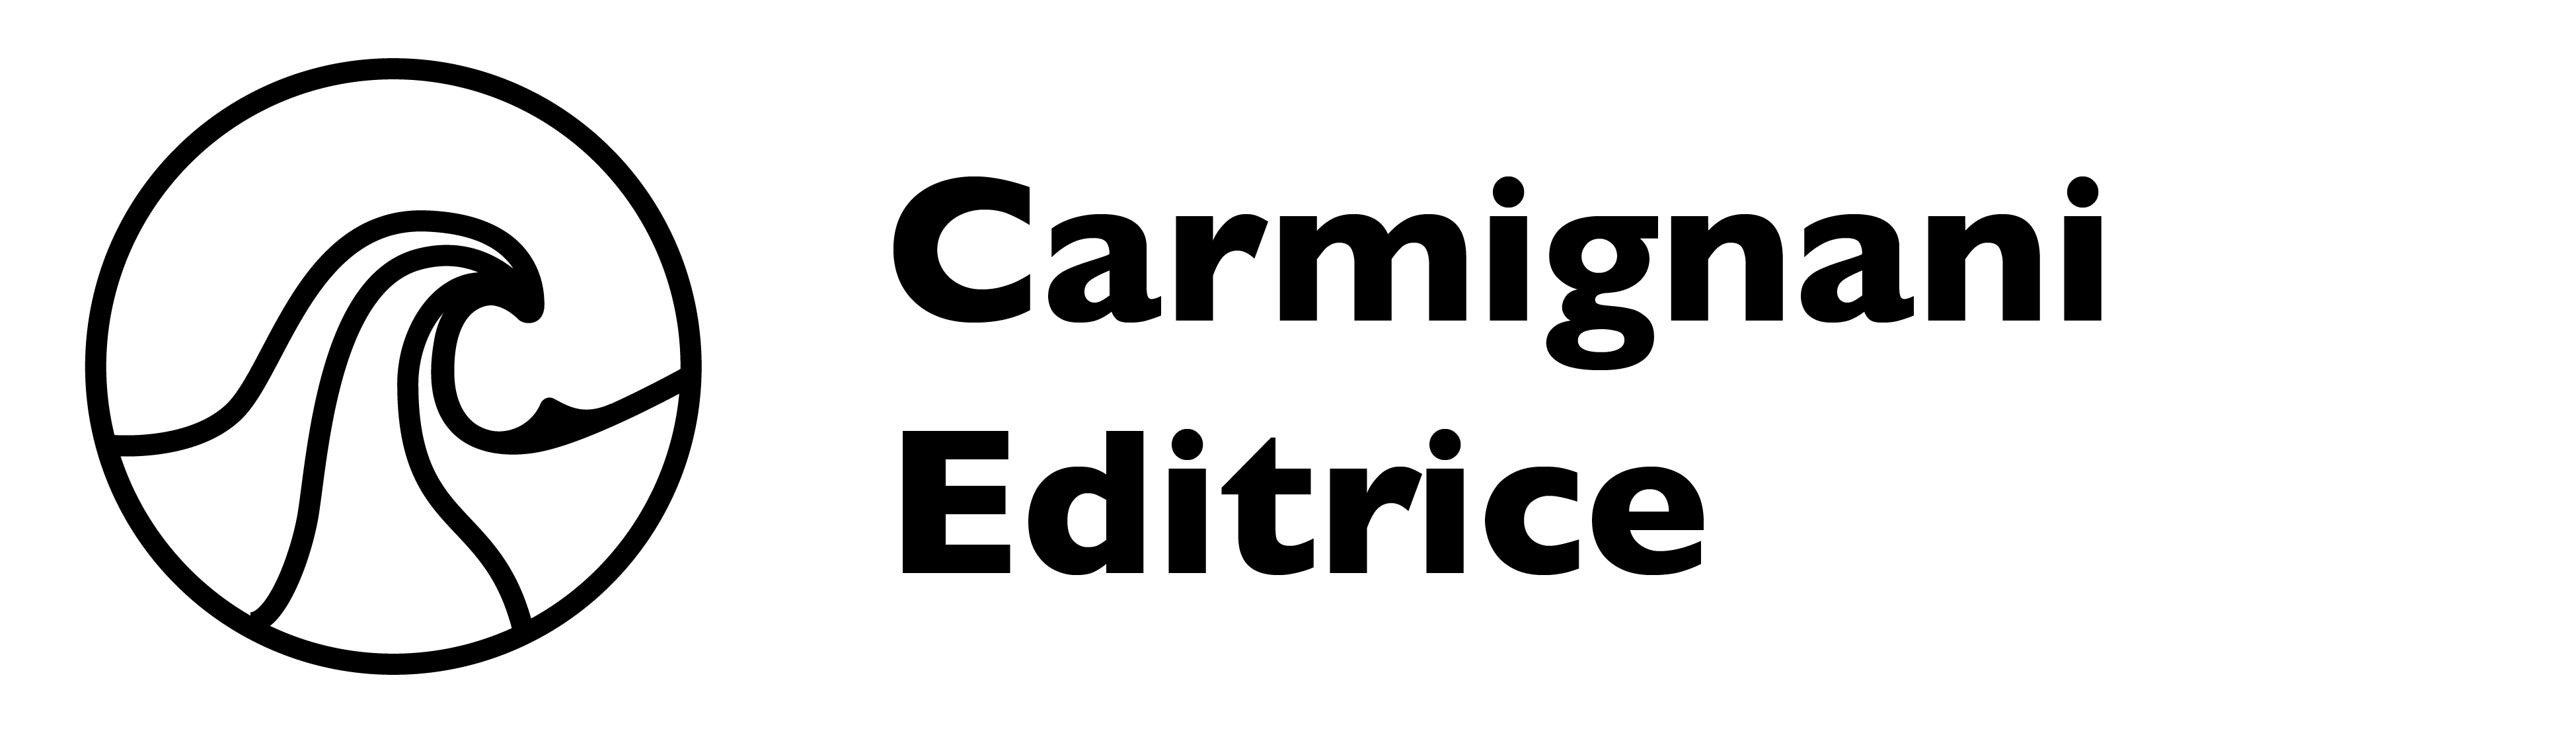 Carmignani Editrice